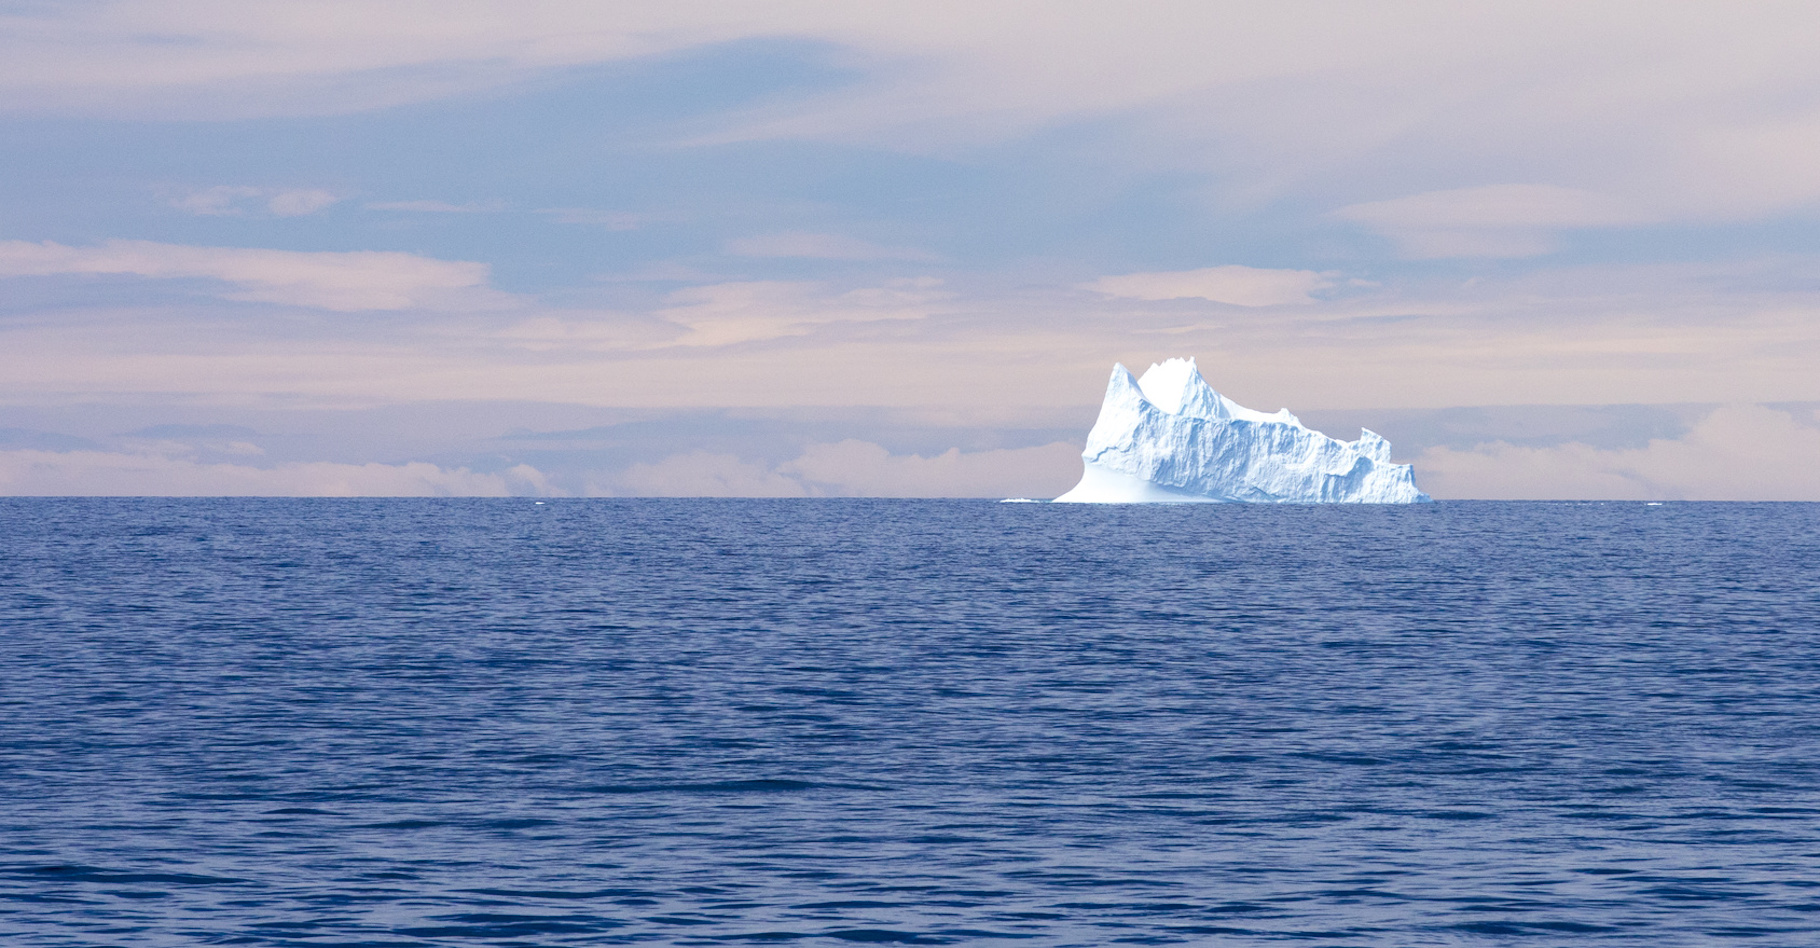 Les scientifiques sont aujourd’hui formels&nbsp;: la glace de l’Antarctique fond. Et si nous ne faisons rien dans les dix années à venir, les conséquences pour notre planète pourraient s’avérer catastrophiques. © Chris, Fotolia